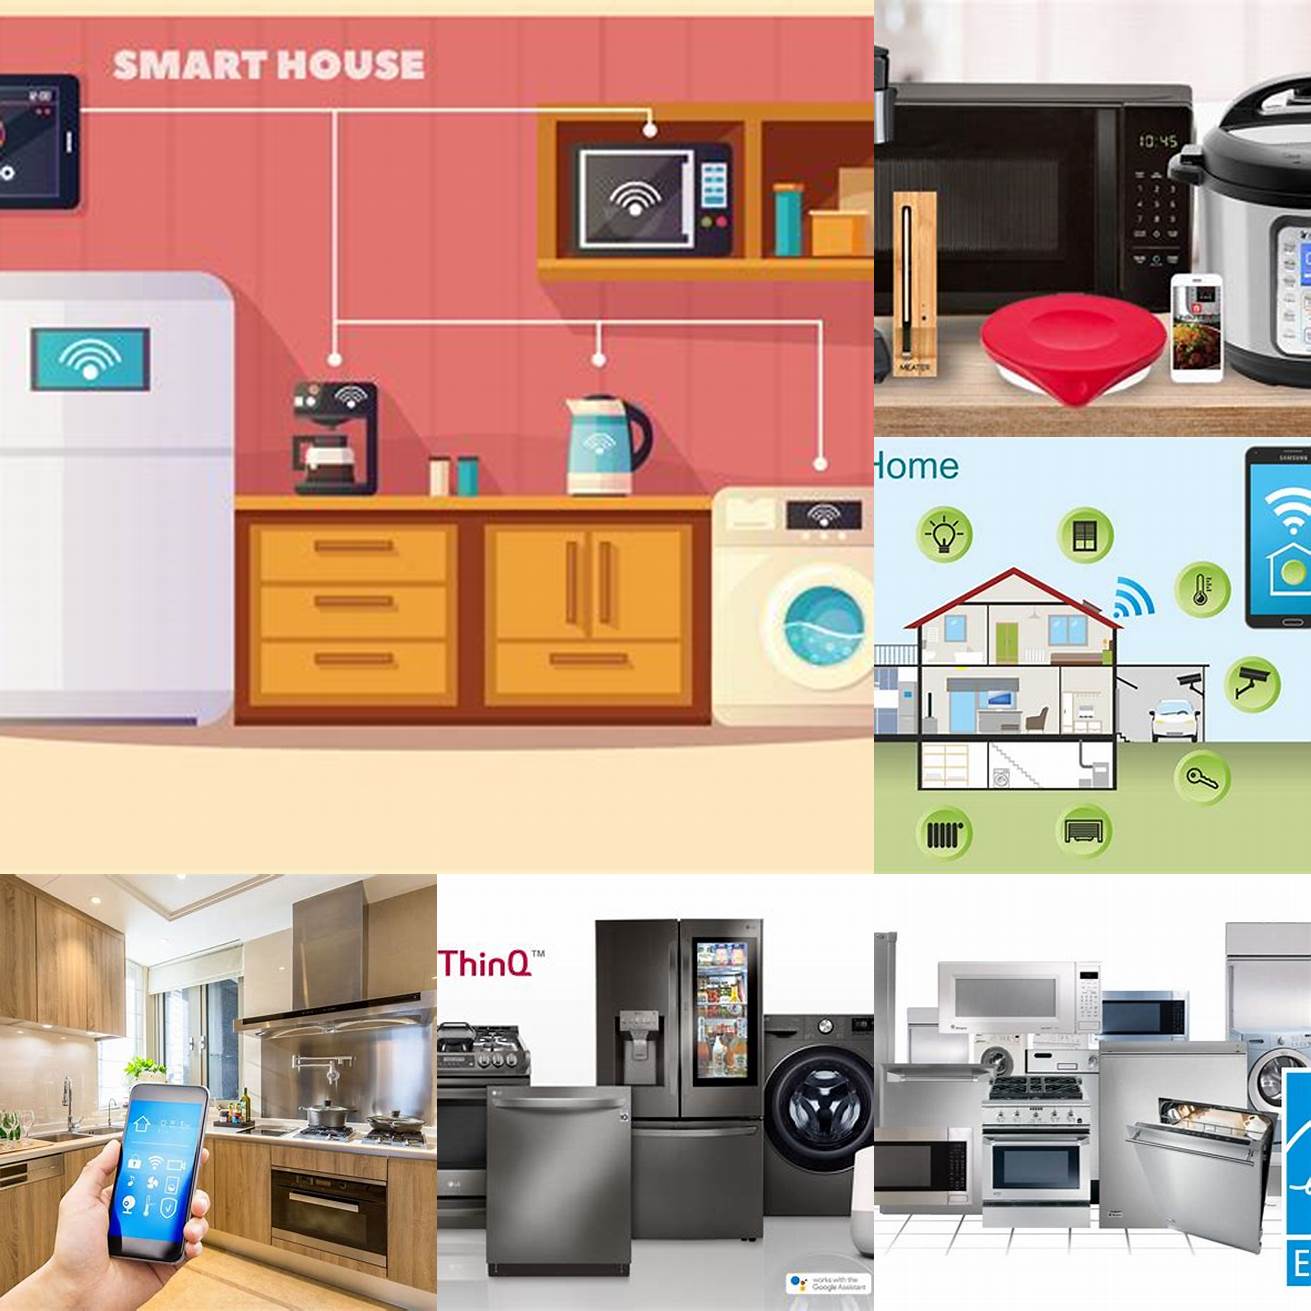 5 Smart Appliances